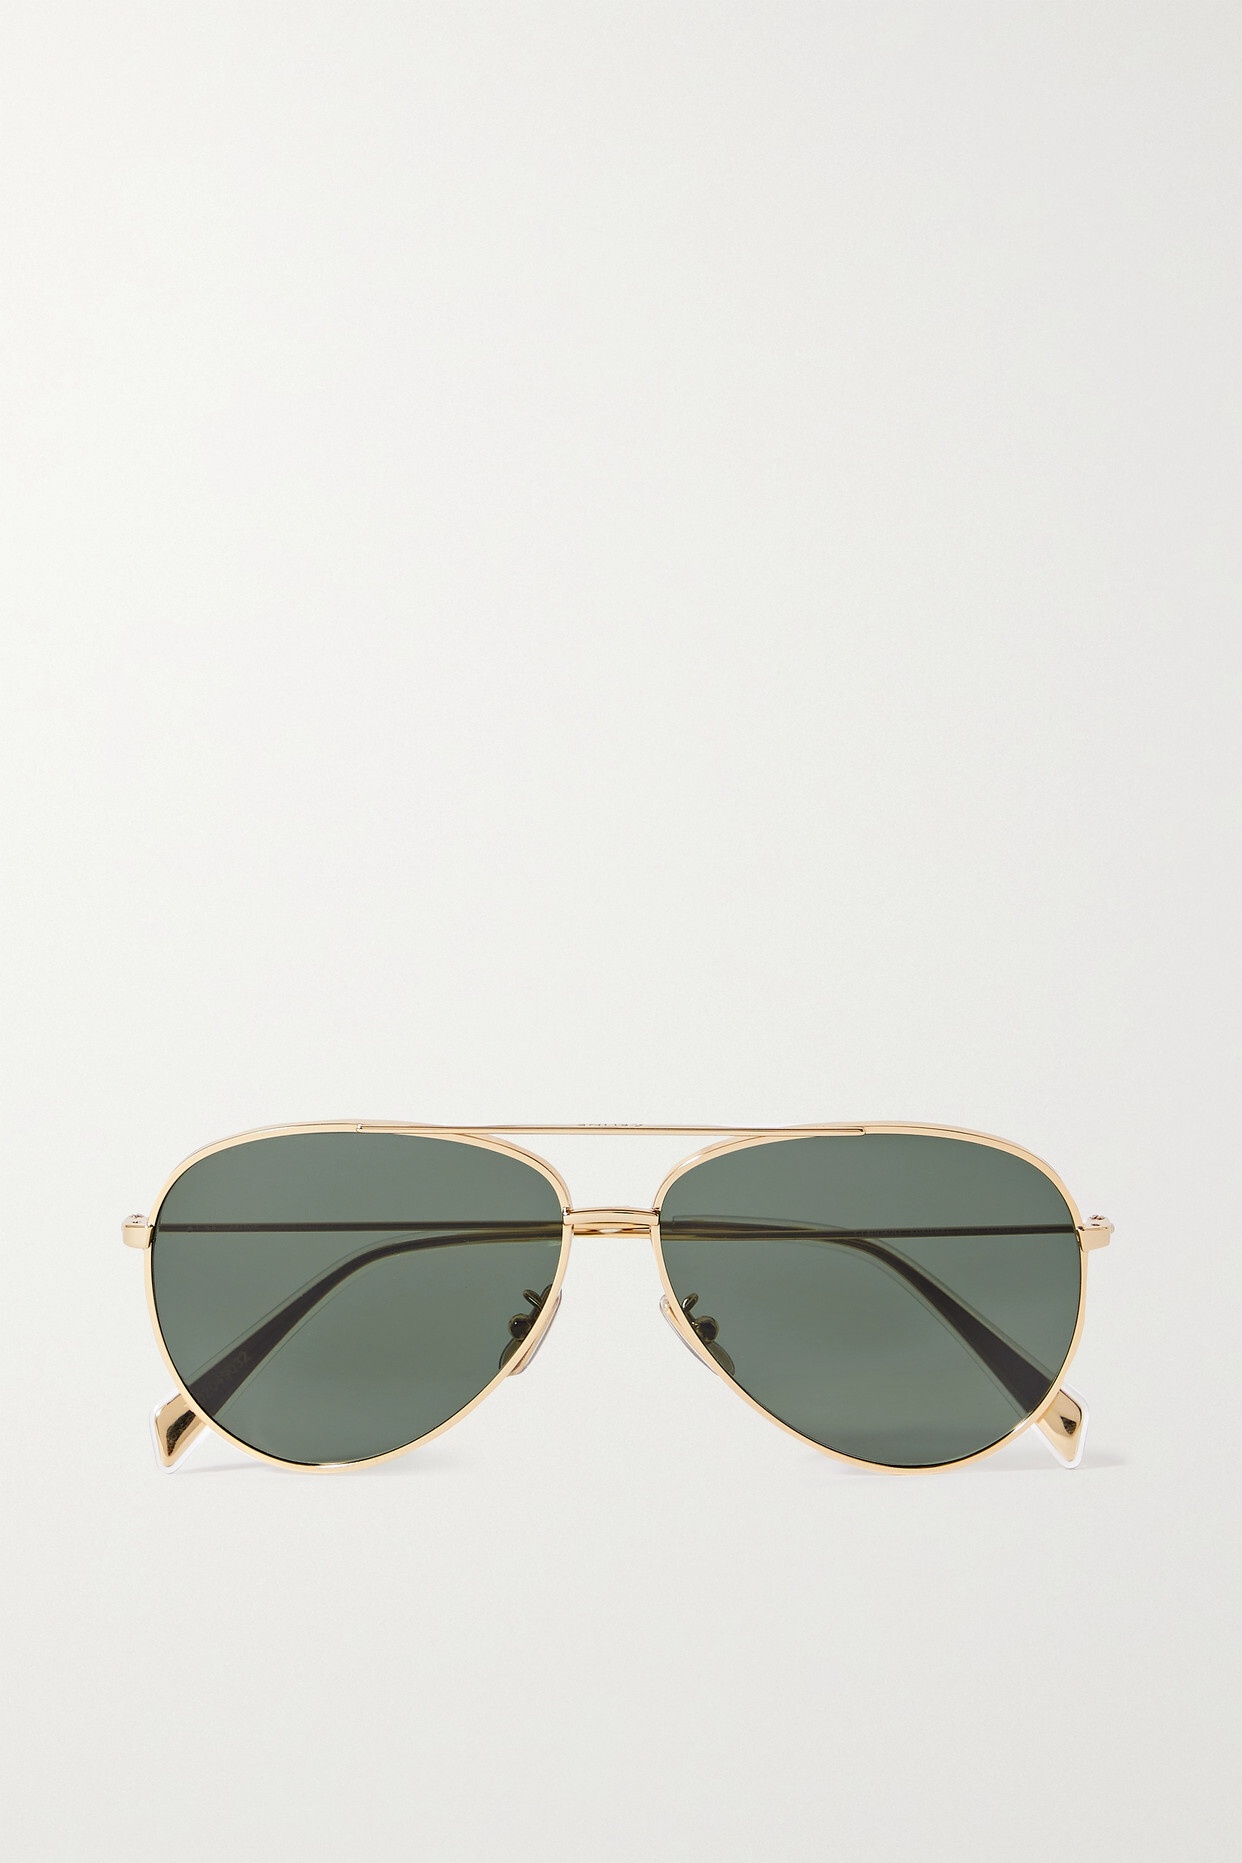 CELINE Eyewear - Aviator-style Gold-tone Sunglasses - One size